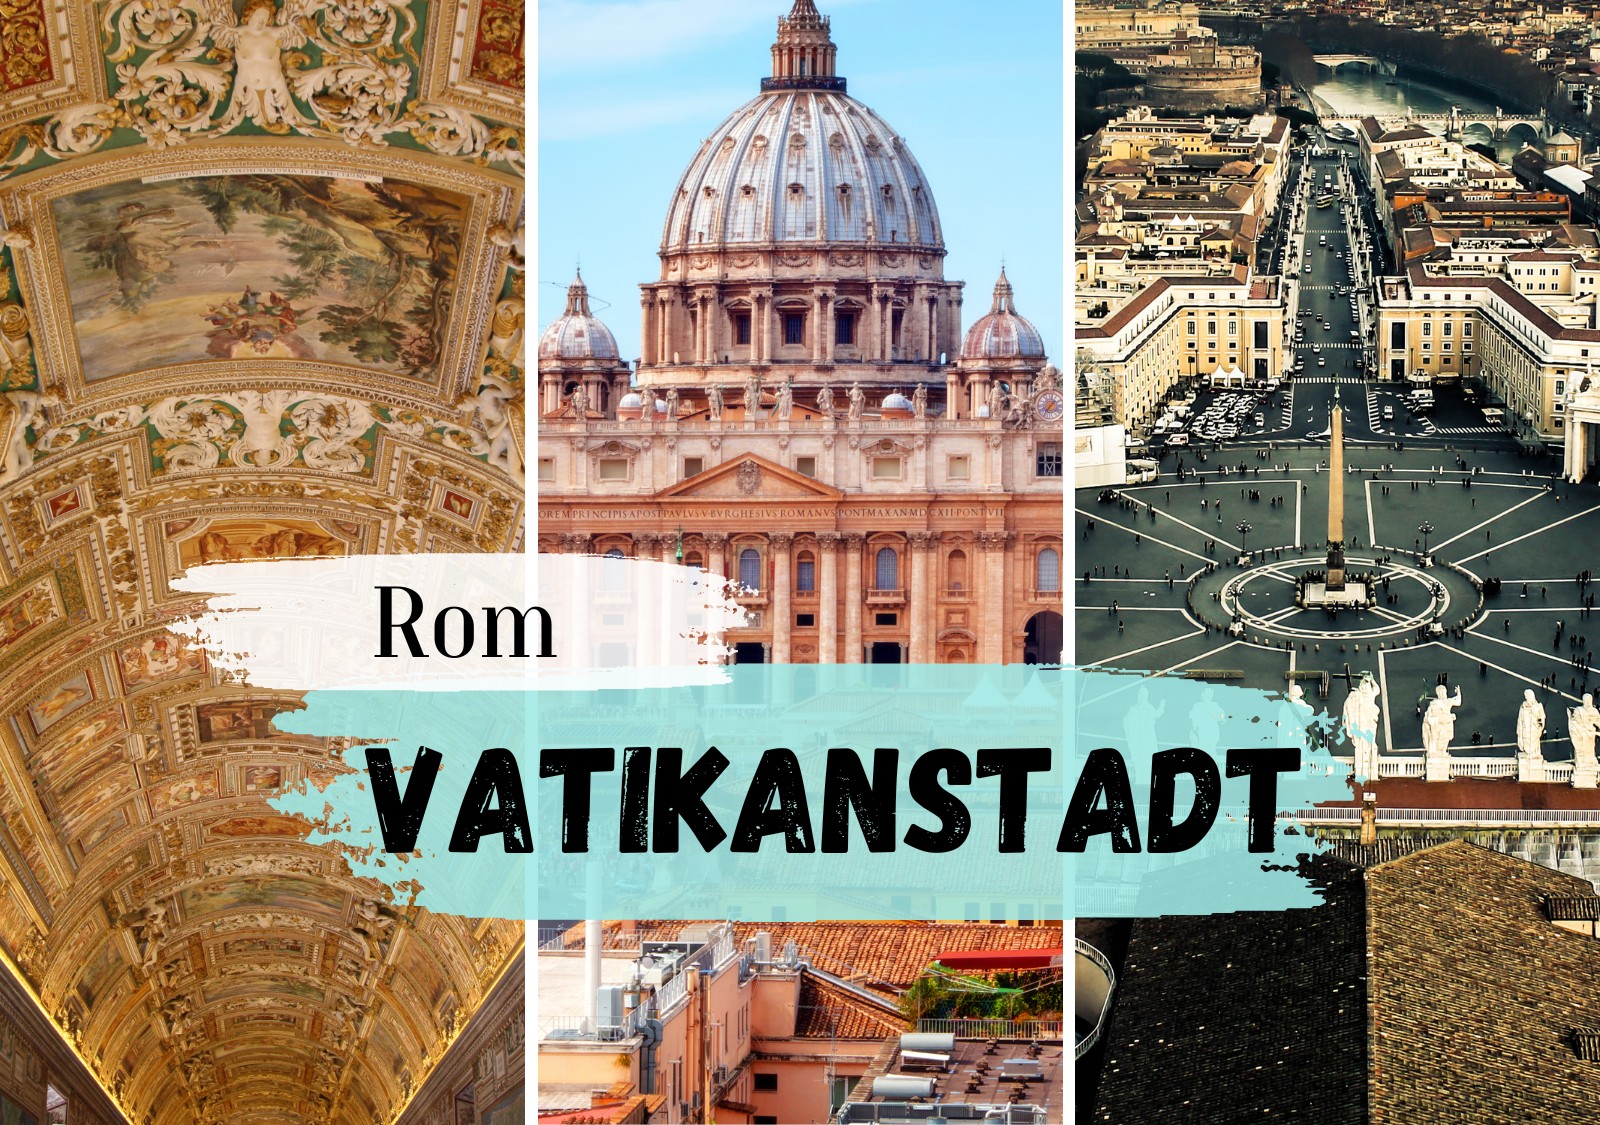 Vatikanstadt Steckbrief - Name und Geschichte